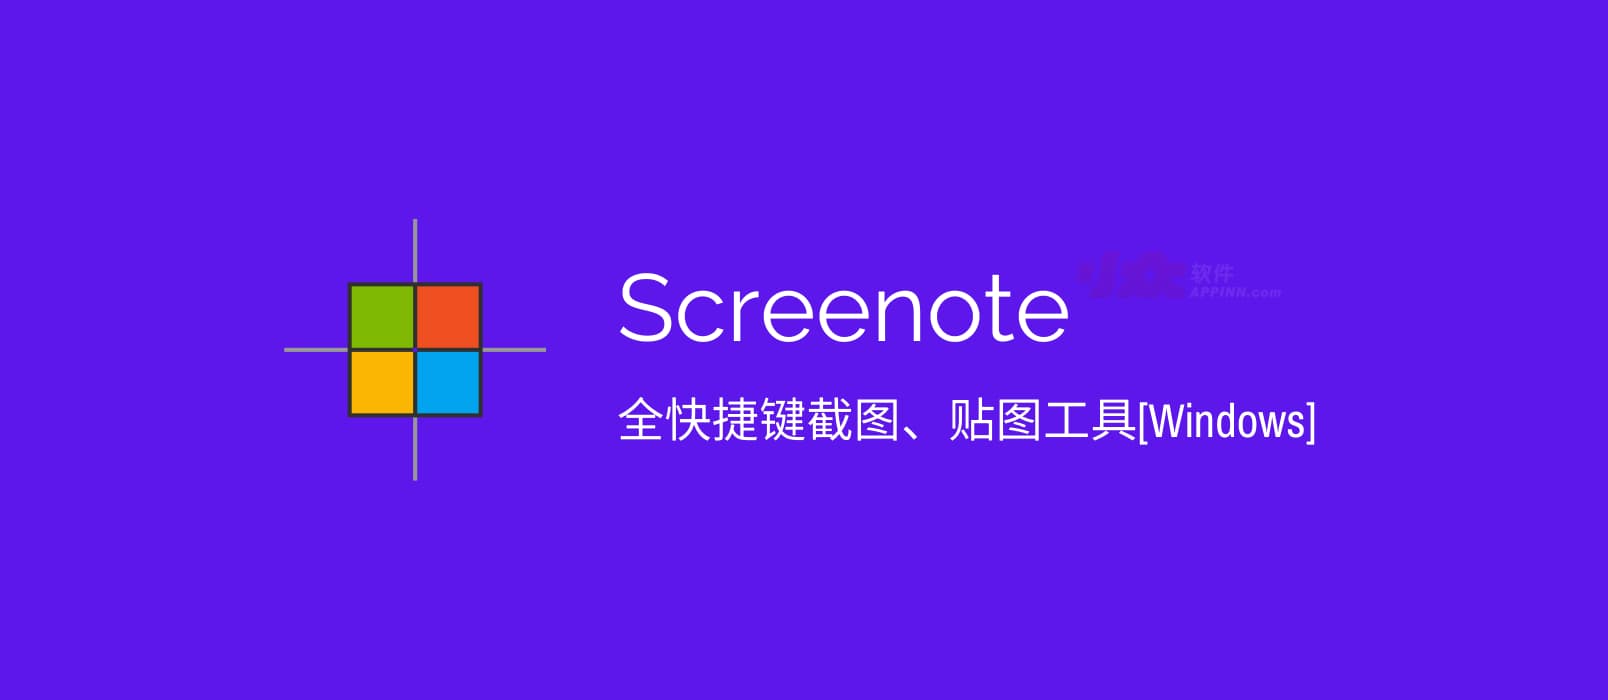 Screenote - 全快捷键截图、贴图工具[Windows] 1